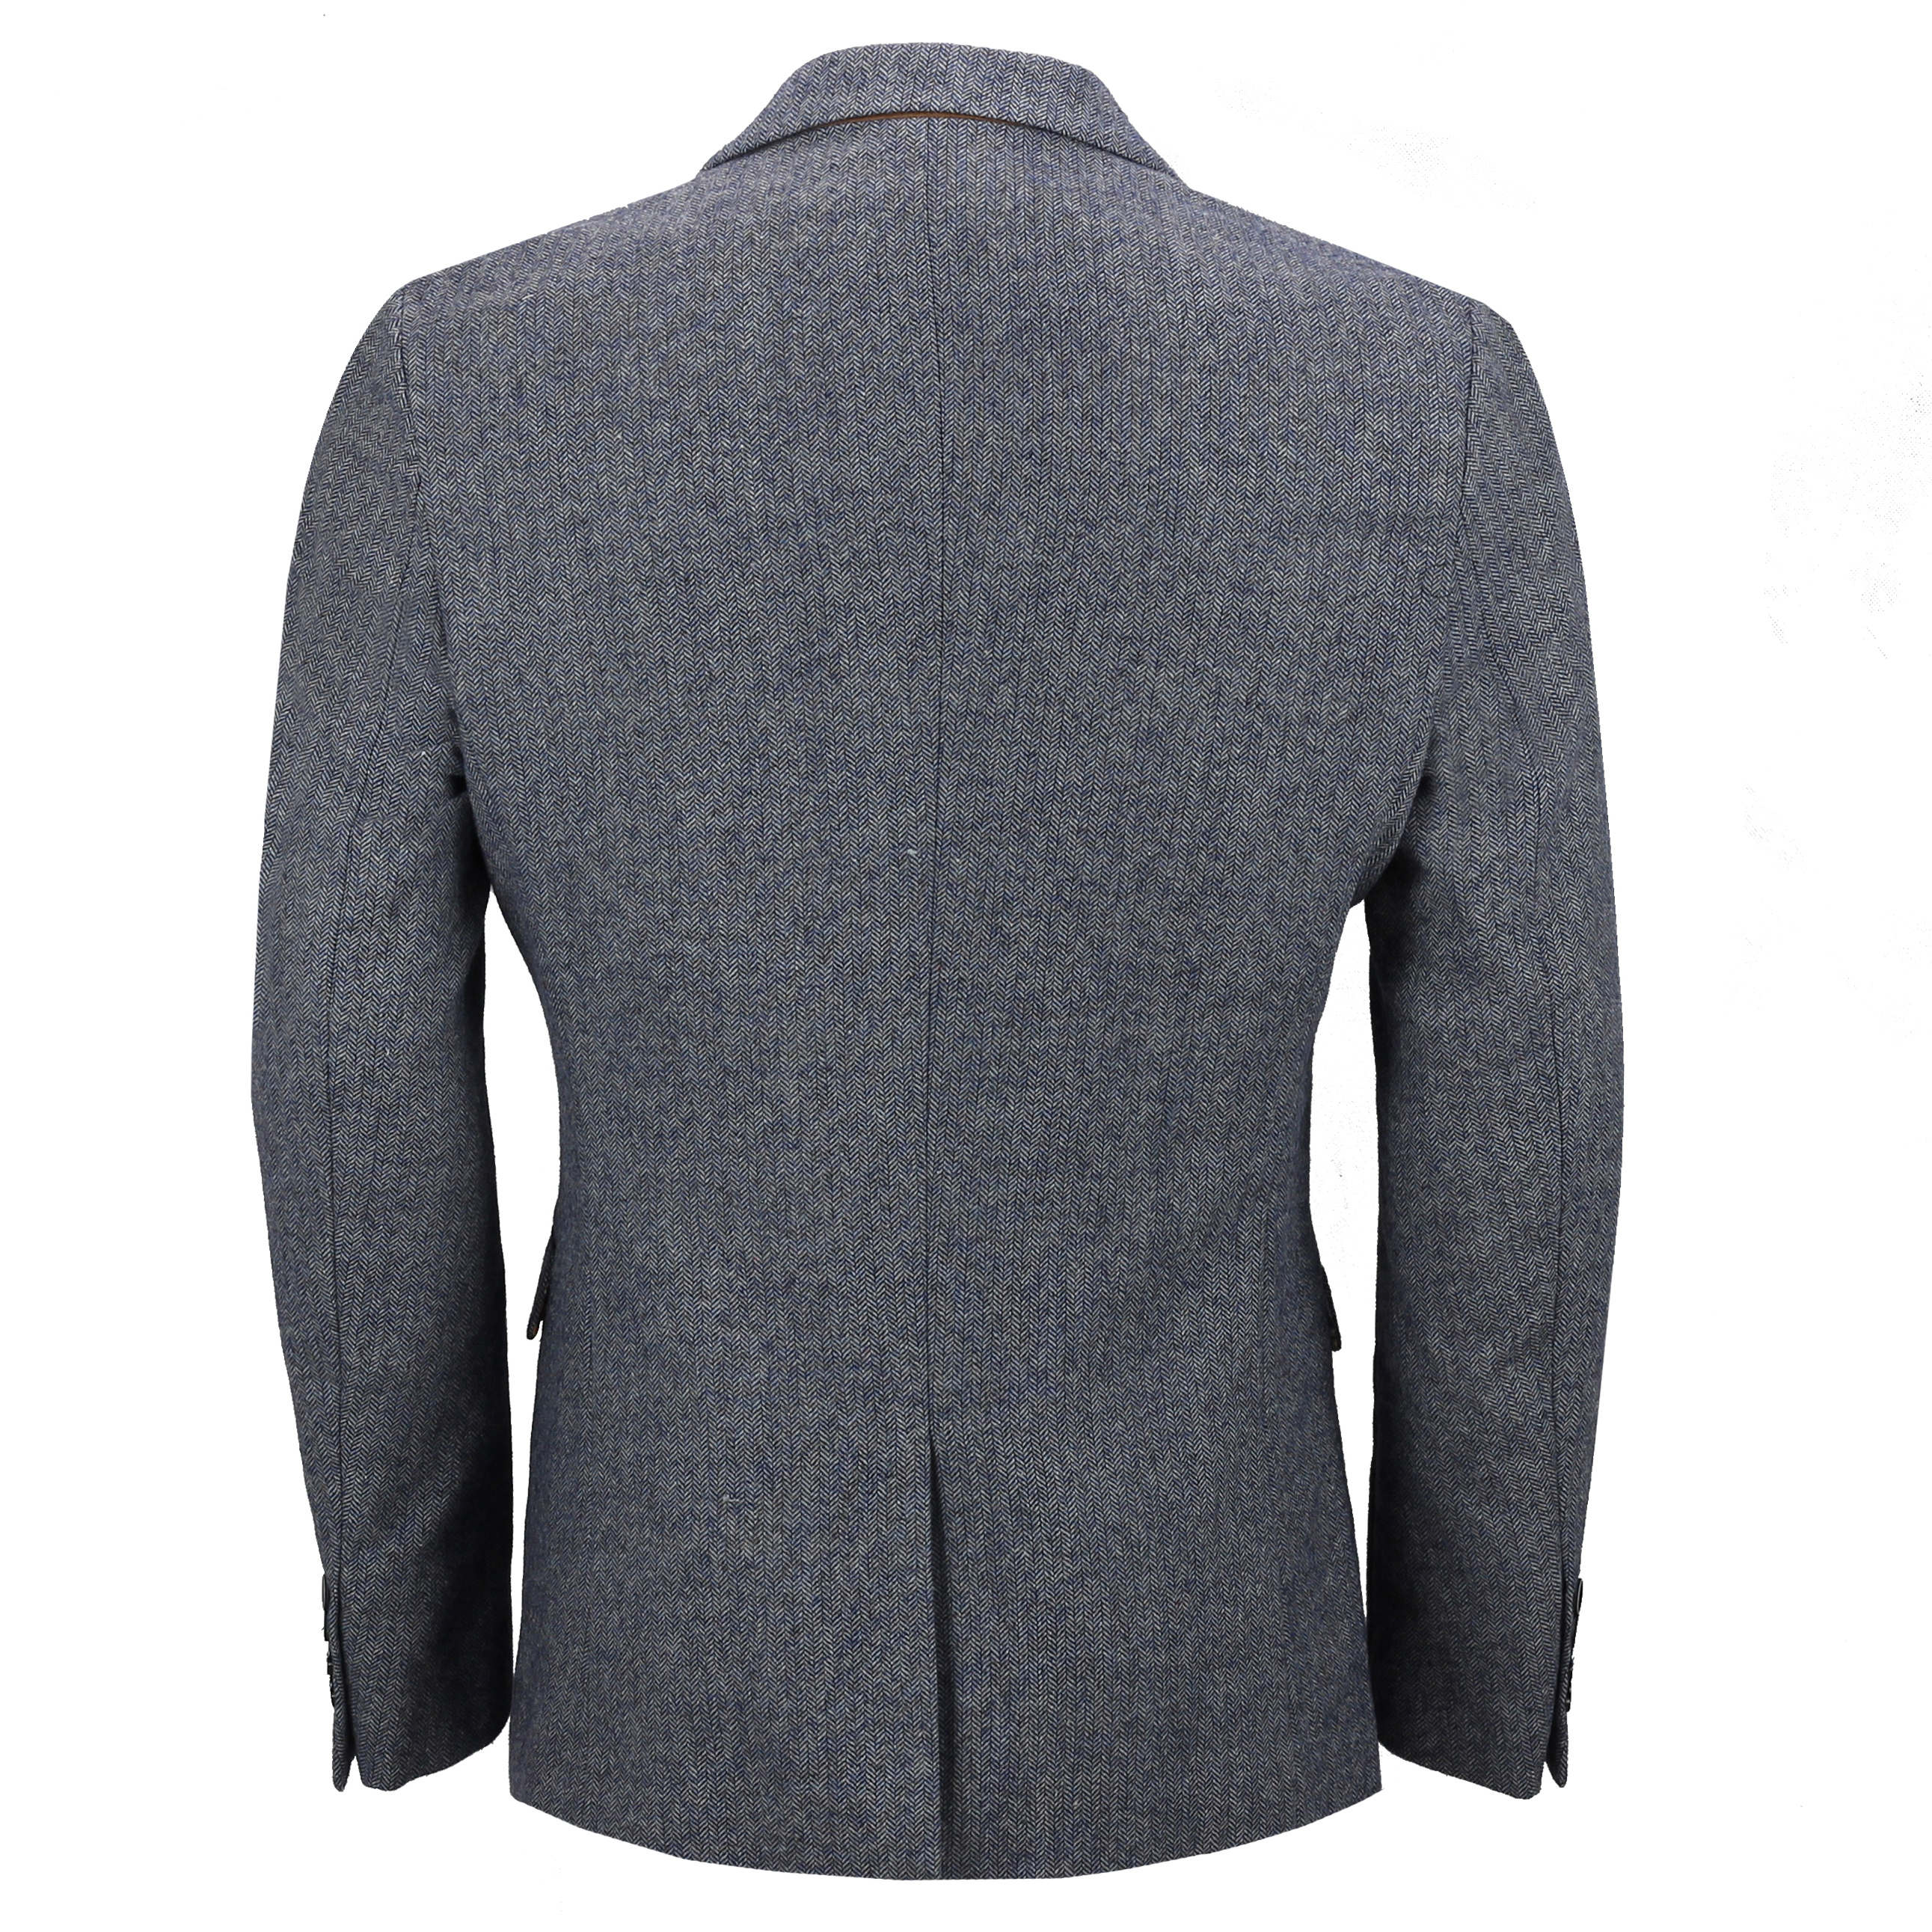 Mens Blue Herringbone Tweed Blazer Smart Casual Tailored Retro Vintage Jacket eBay